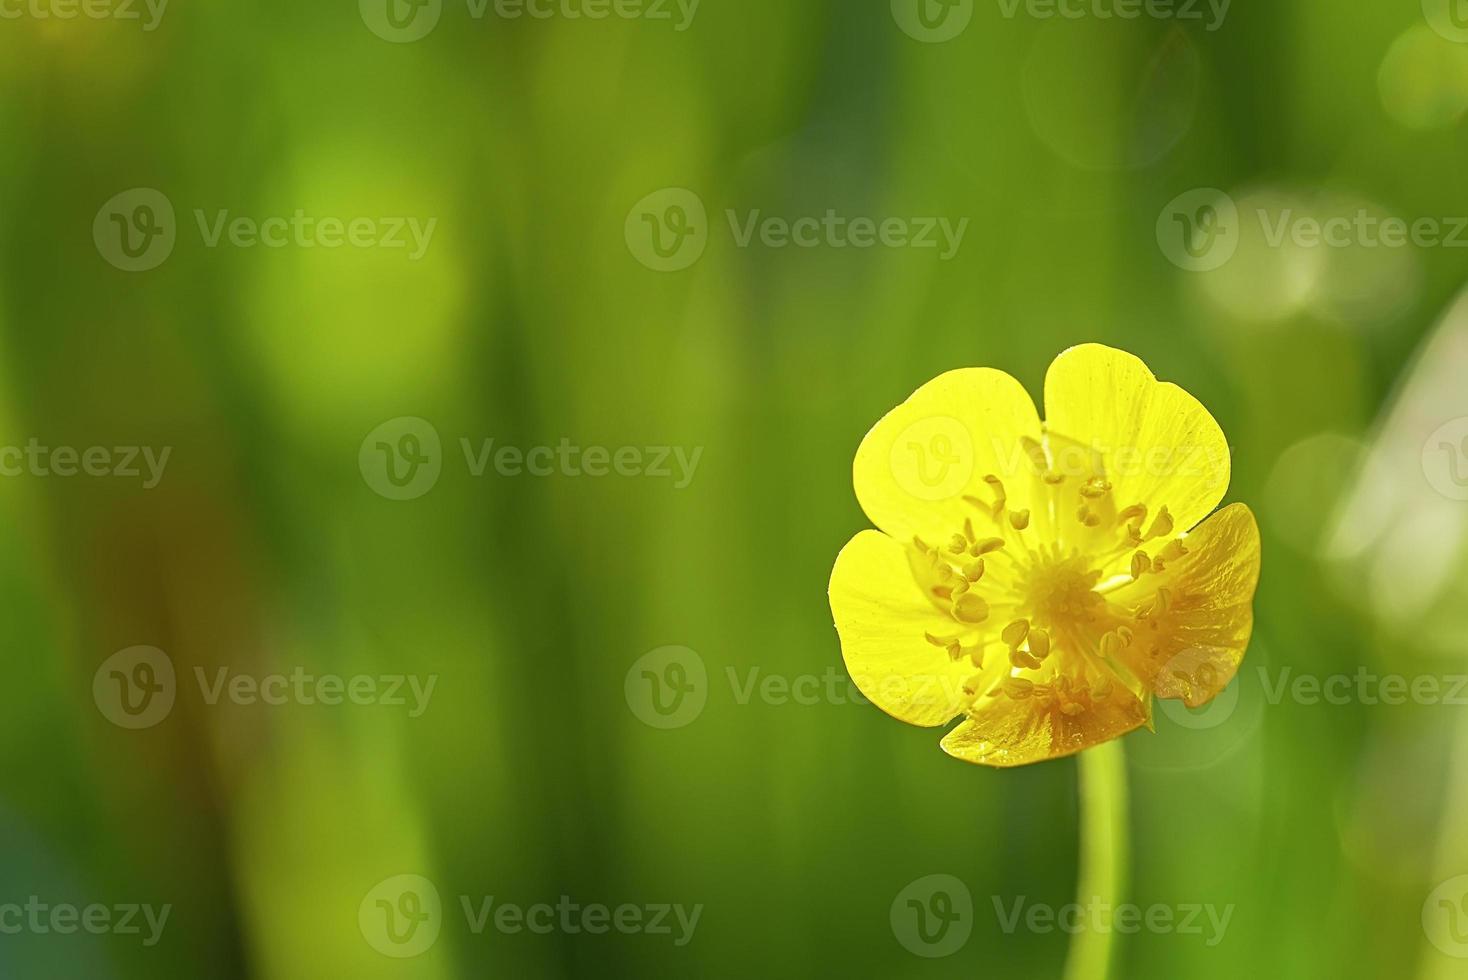 klein boterbloem bloem foto